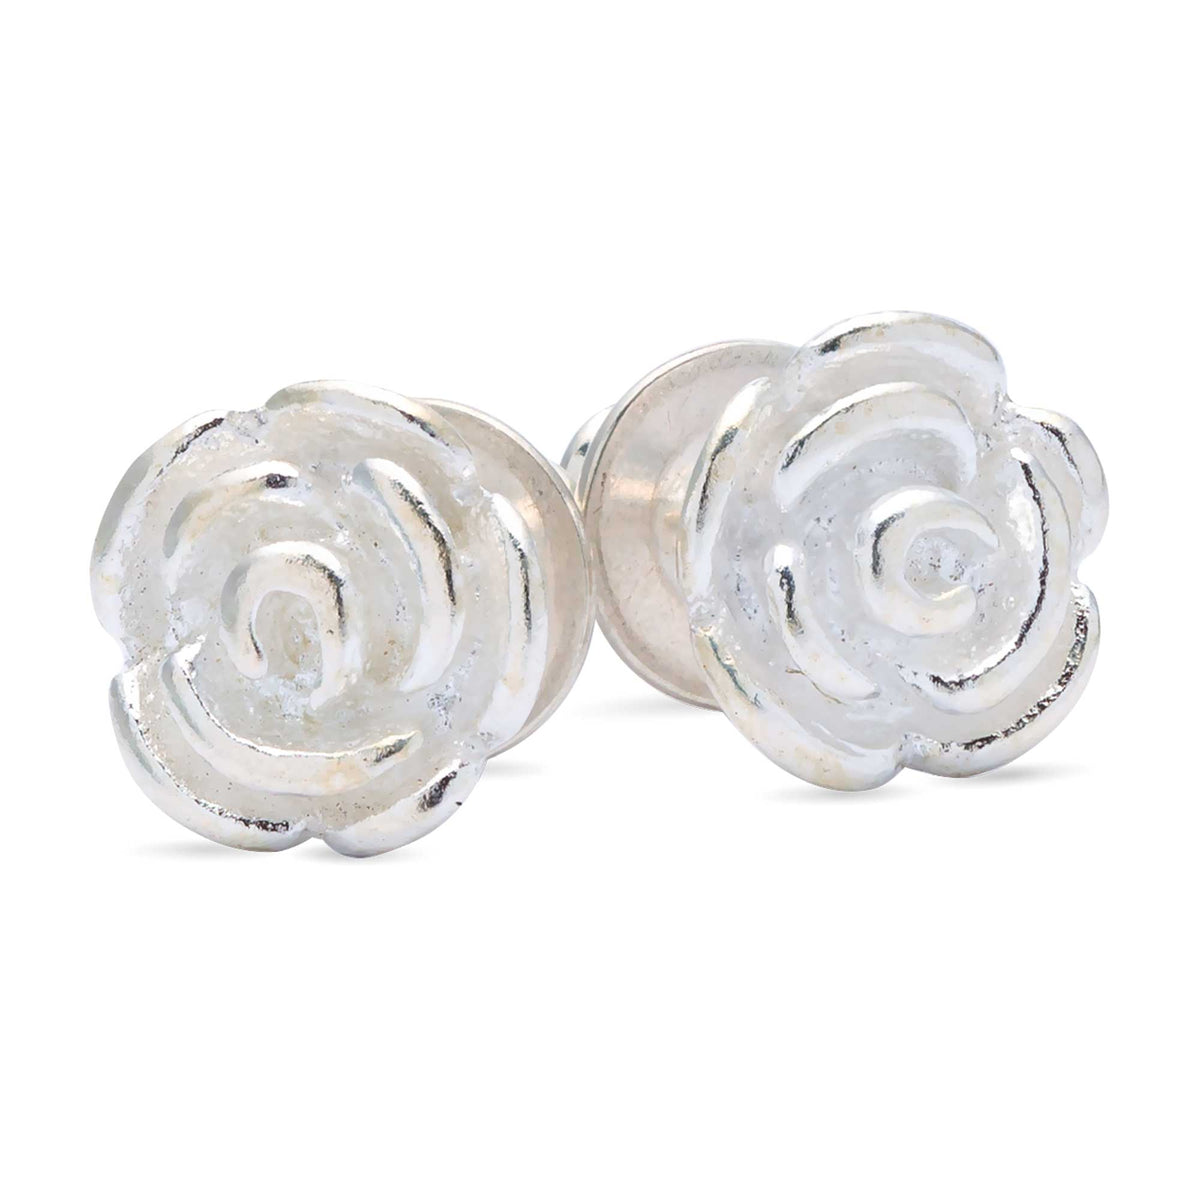 Solid silver rose flower stud earrings Scarlett Jewellery